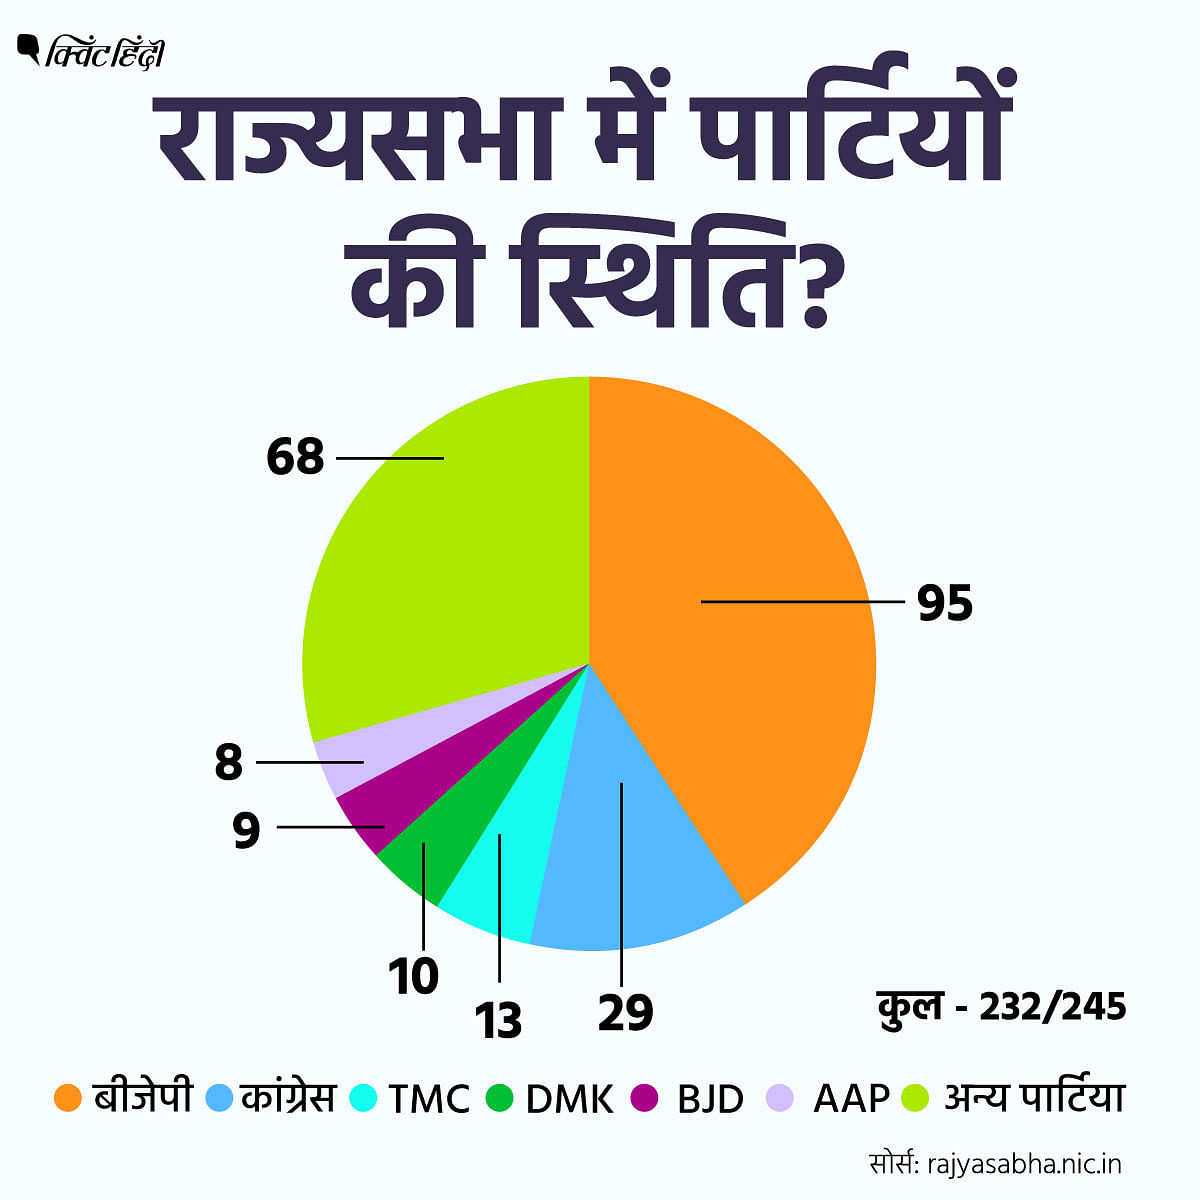 Rajya Sabha Election Results के बाद राज्यसभा में पार्टियों की स्थिति क्या है?